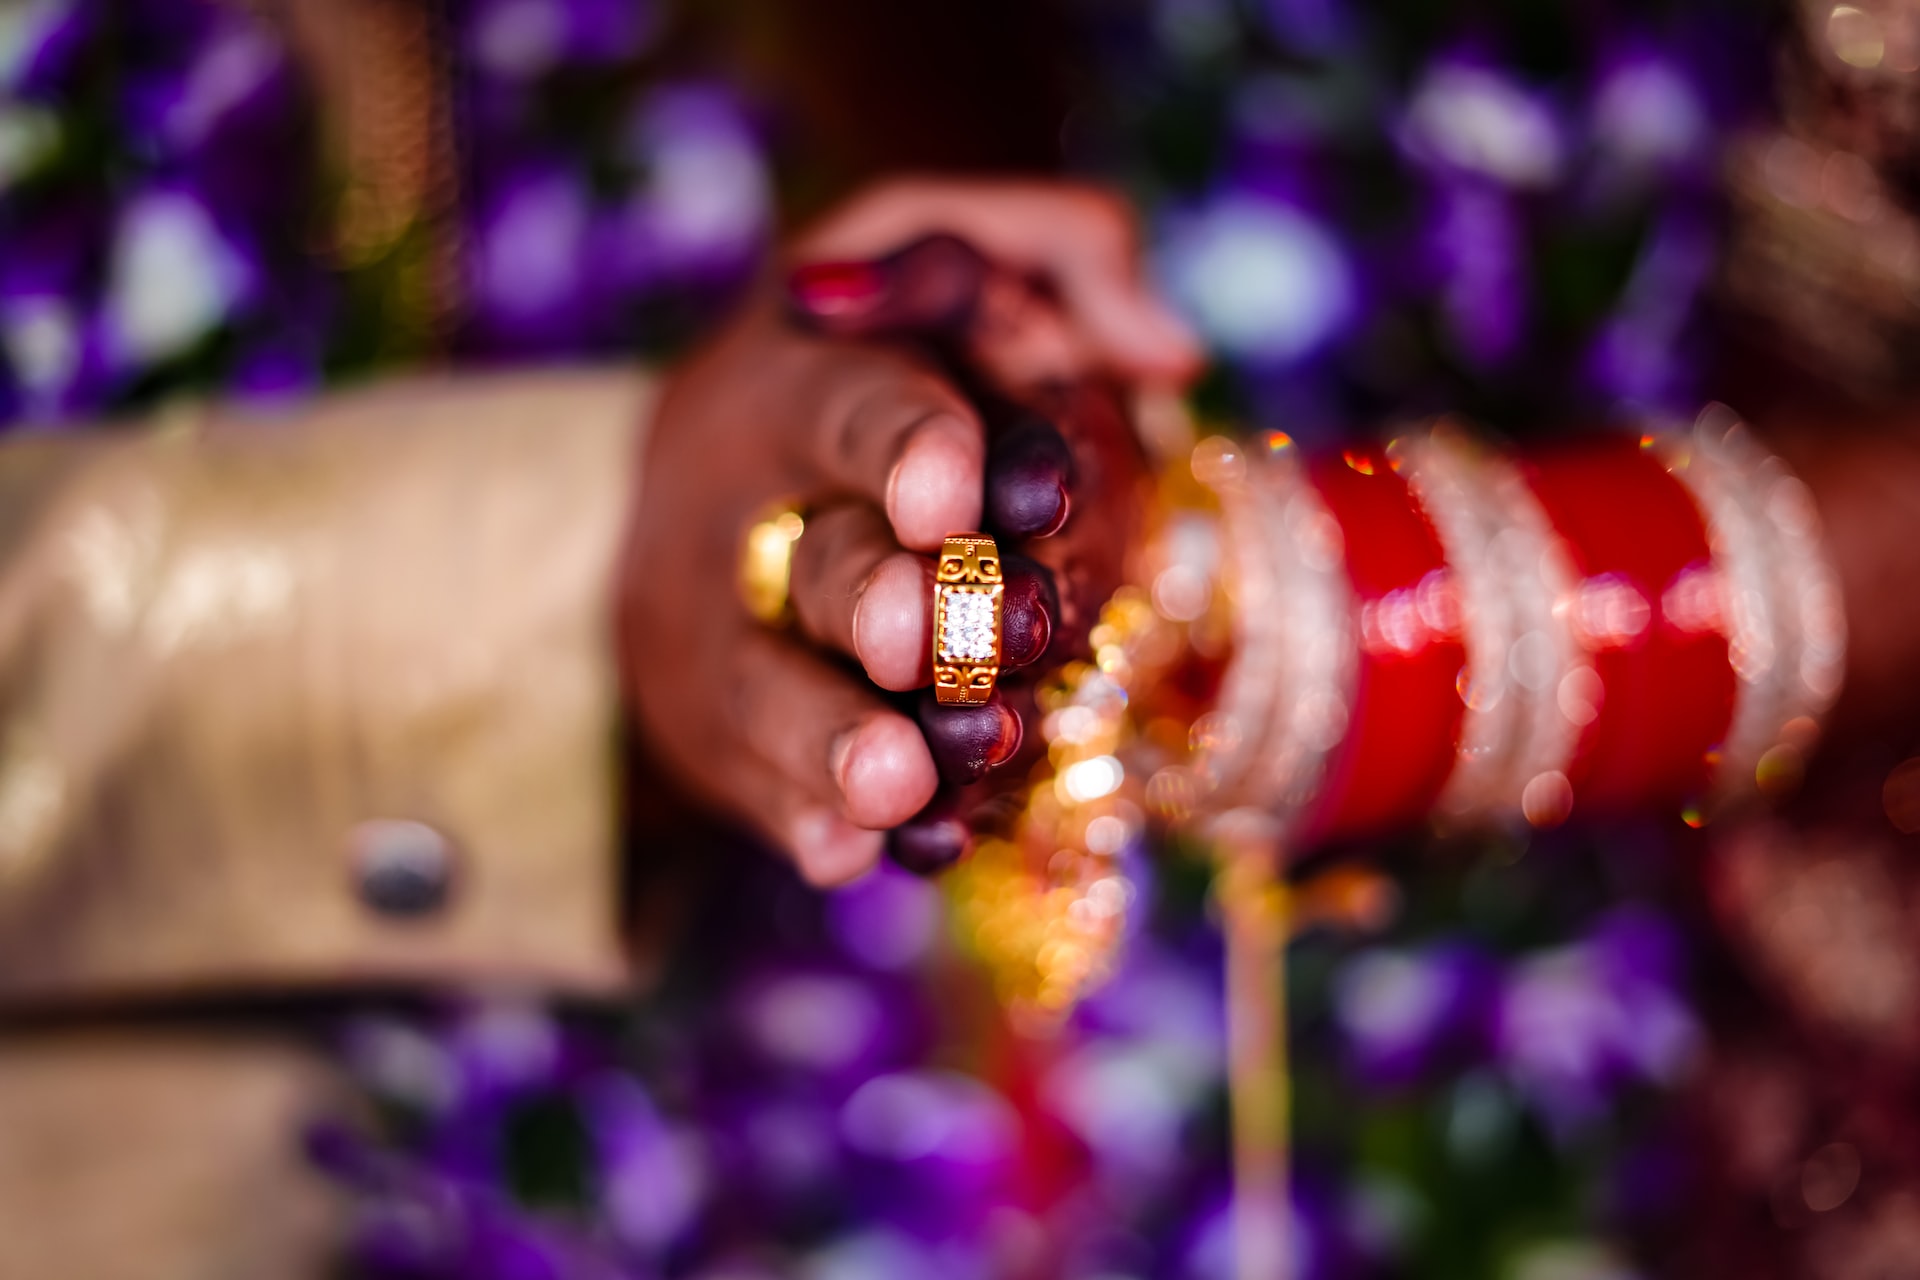 mariage en inde et cours or - attrait de l'or et montée du cours de l'or - source : viresh studio pour unsplash